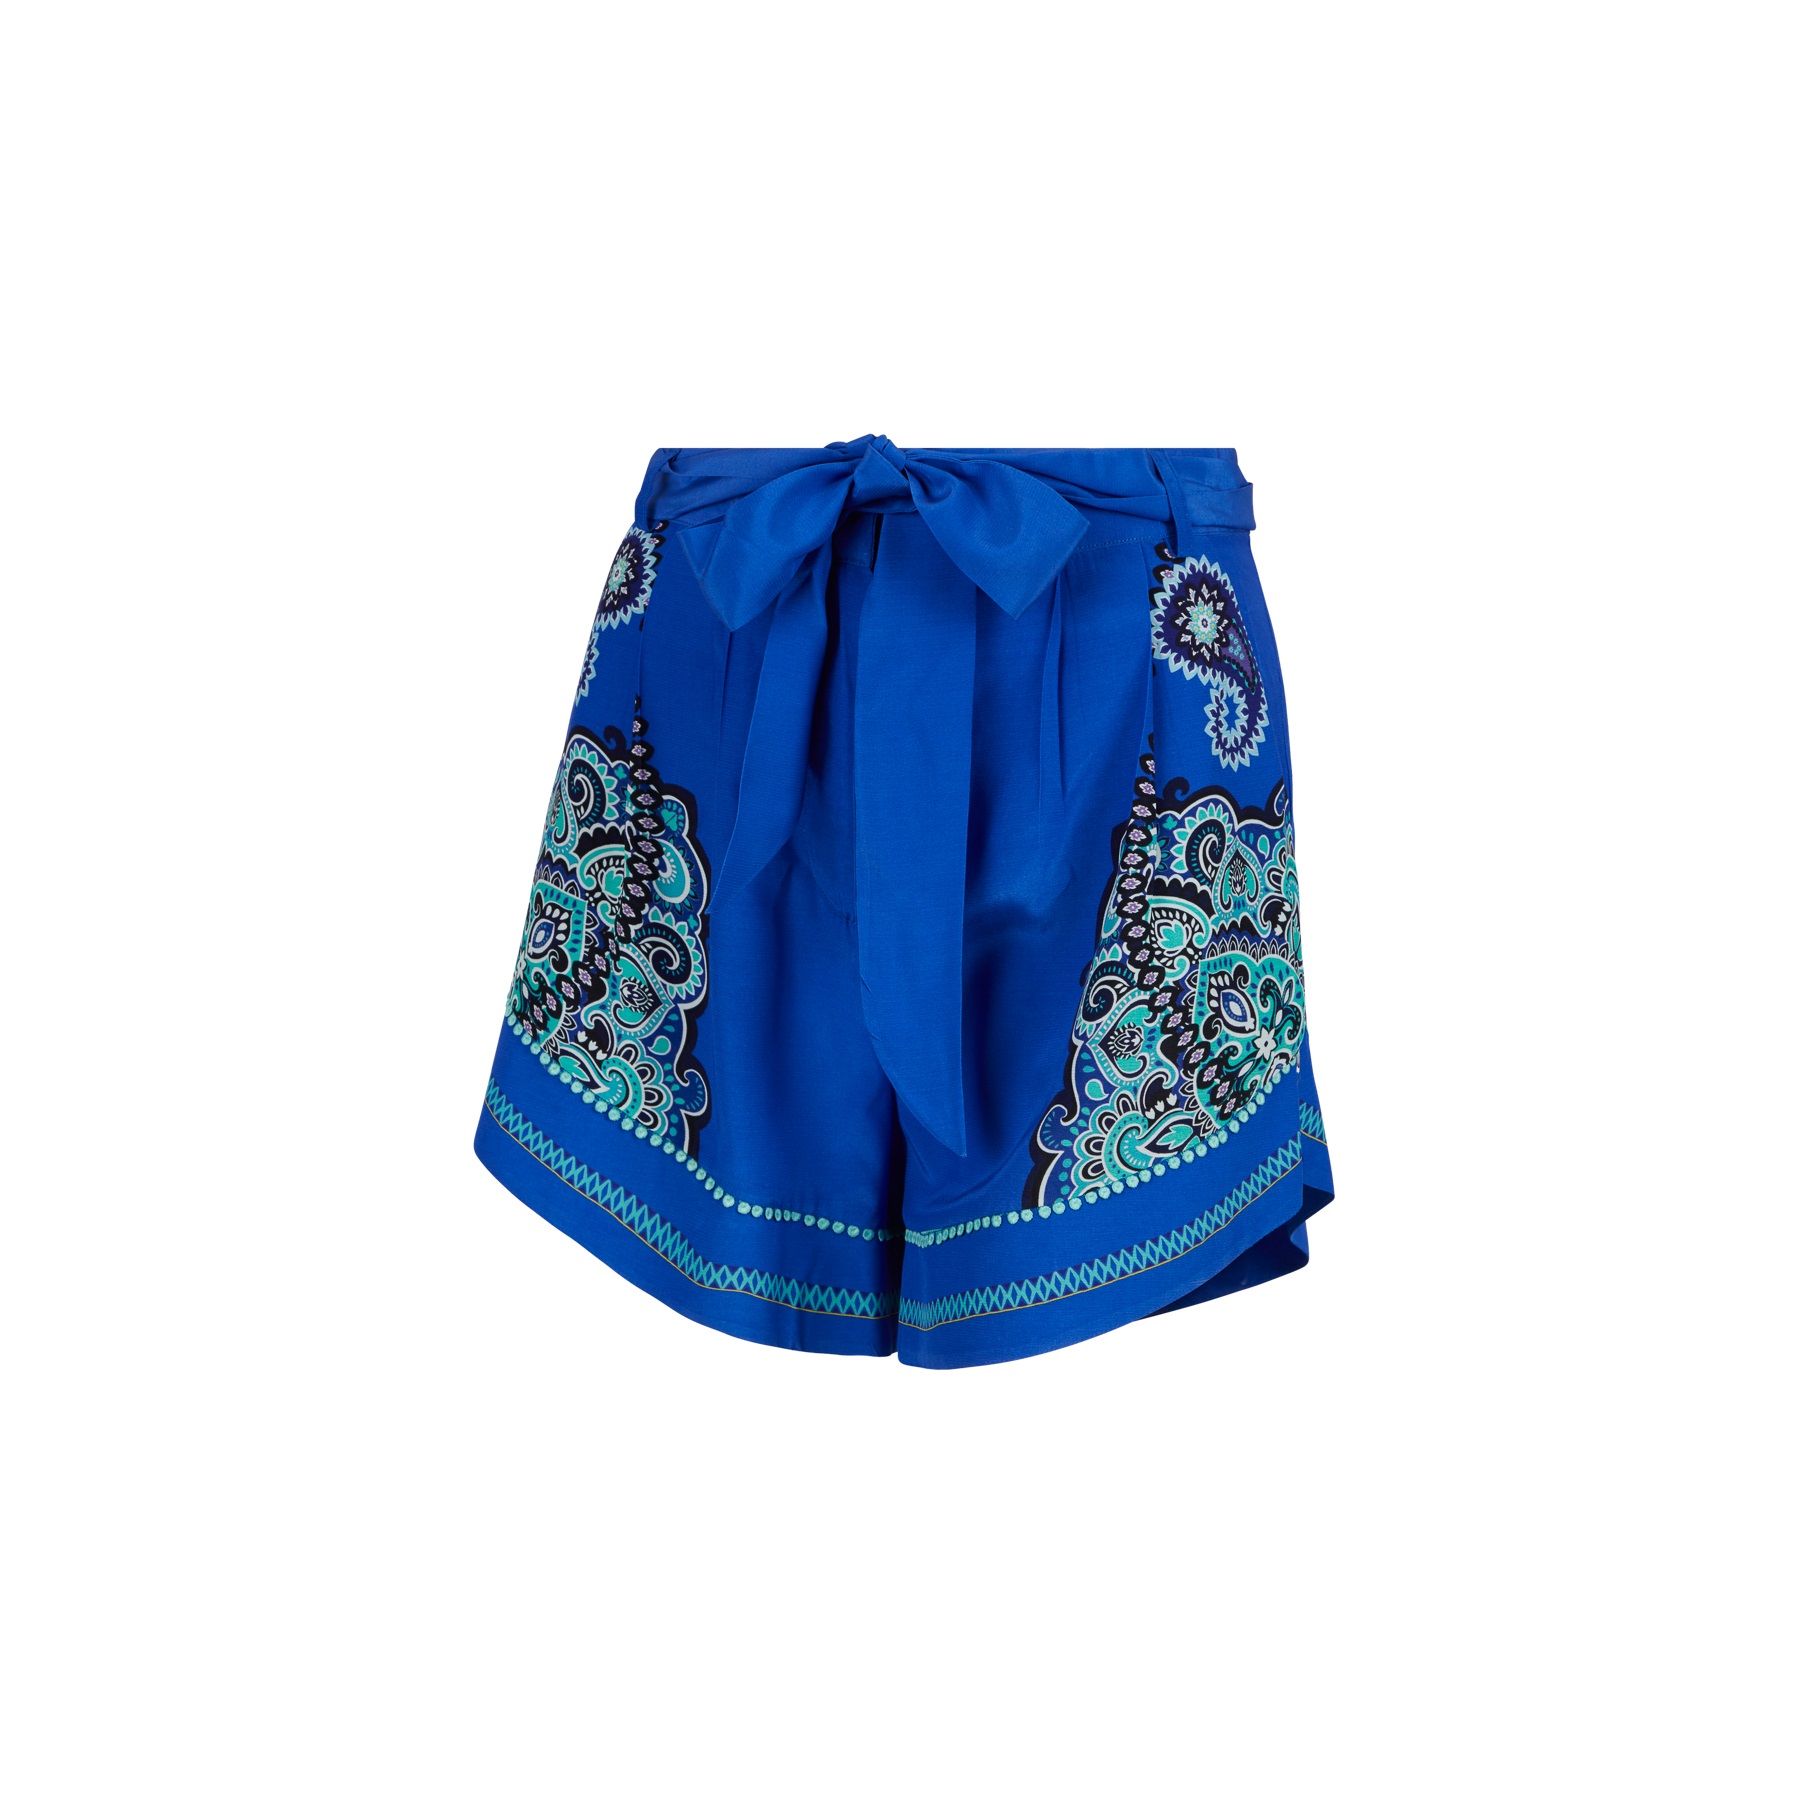  -  sportalm Fiji Shorts  9398338832434